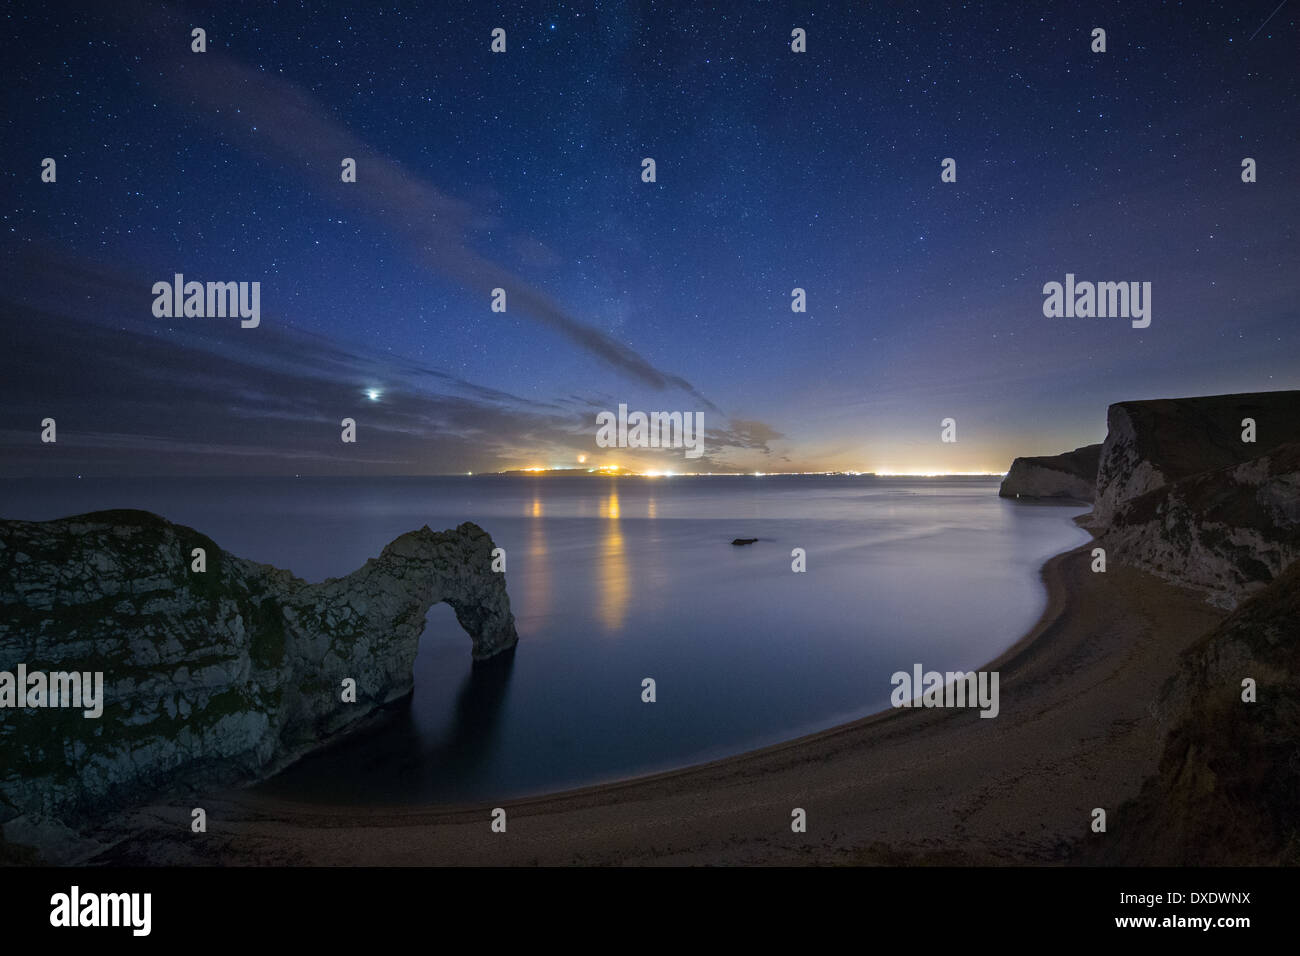 Las estrellas y la Vía Láctea más Durdle Door y la Costa Jurásica, con luces de Weymouth & Portland más allá, Dorset, Inglaterra Foto de stock